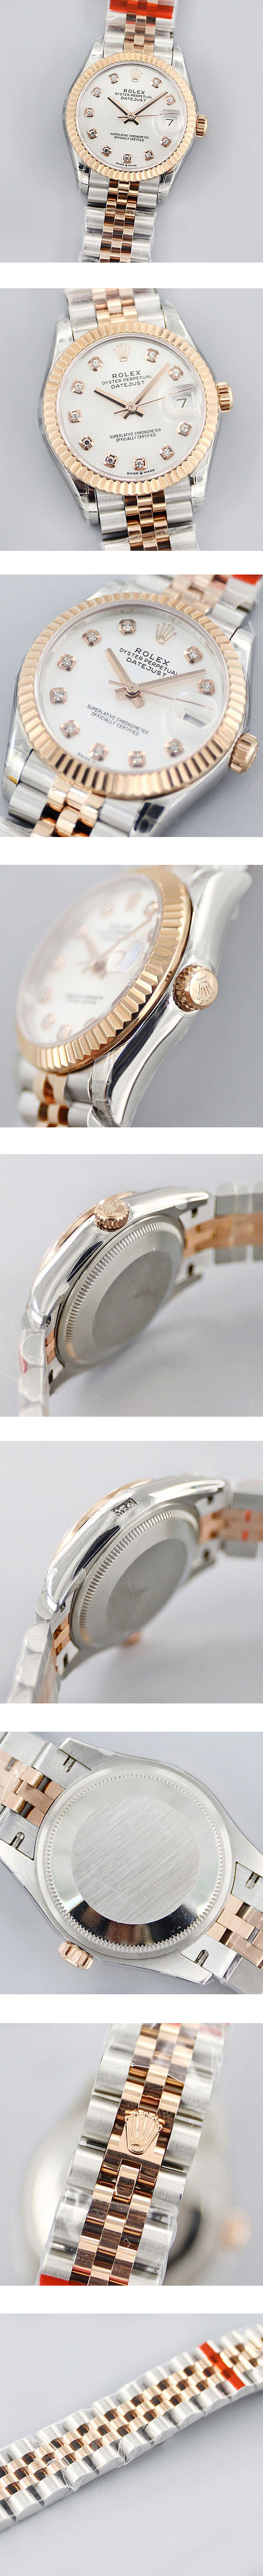 レディス腕時計 ロレックスコピー デイトジャスト31mm ホワイト 178271